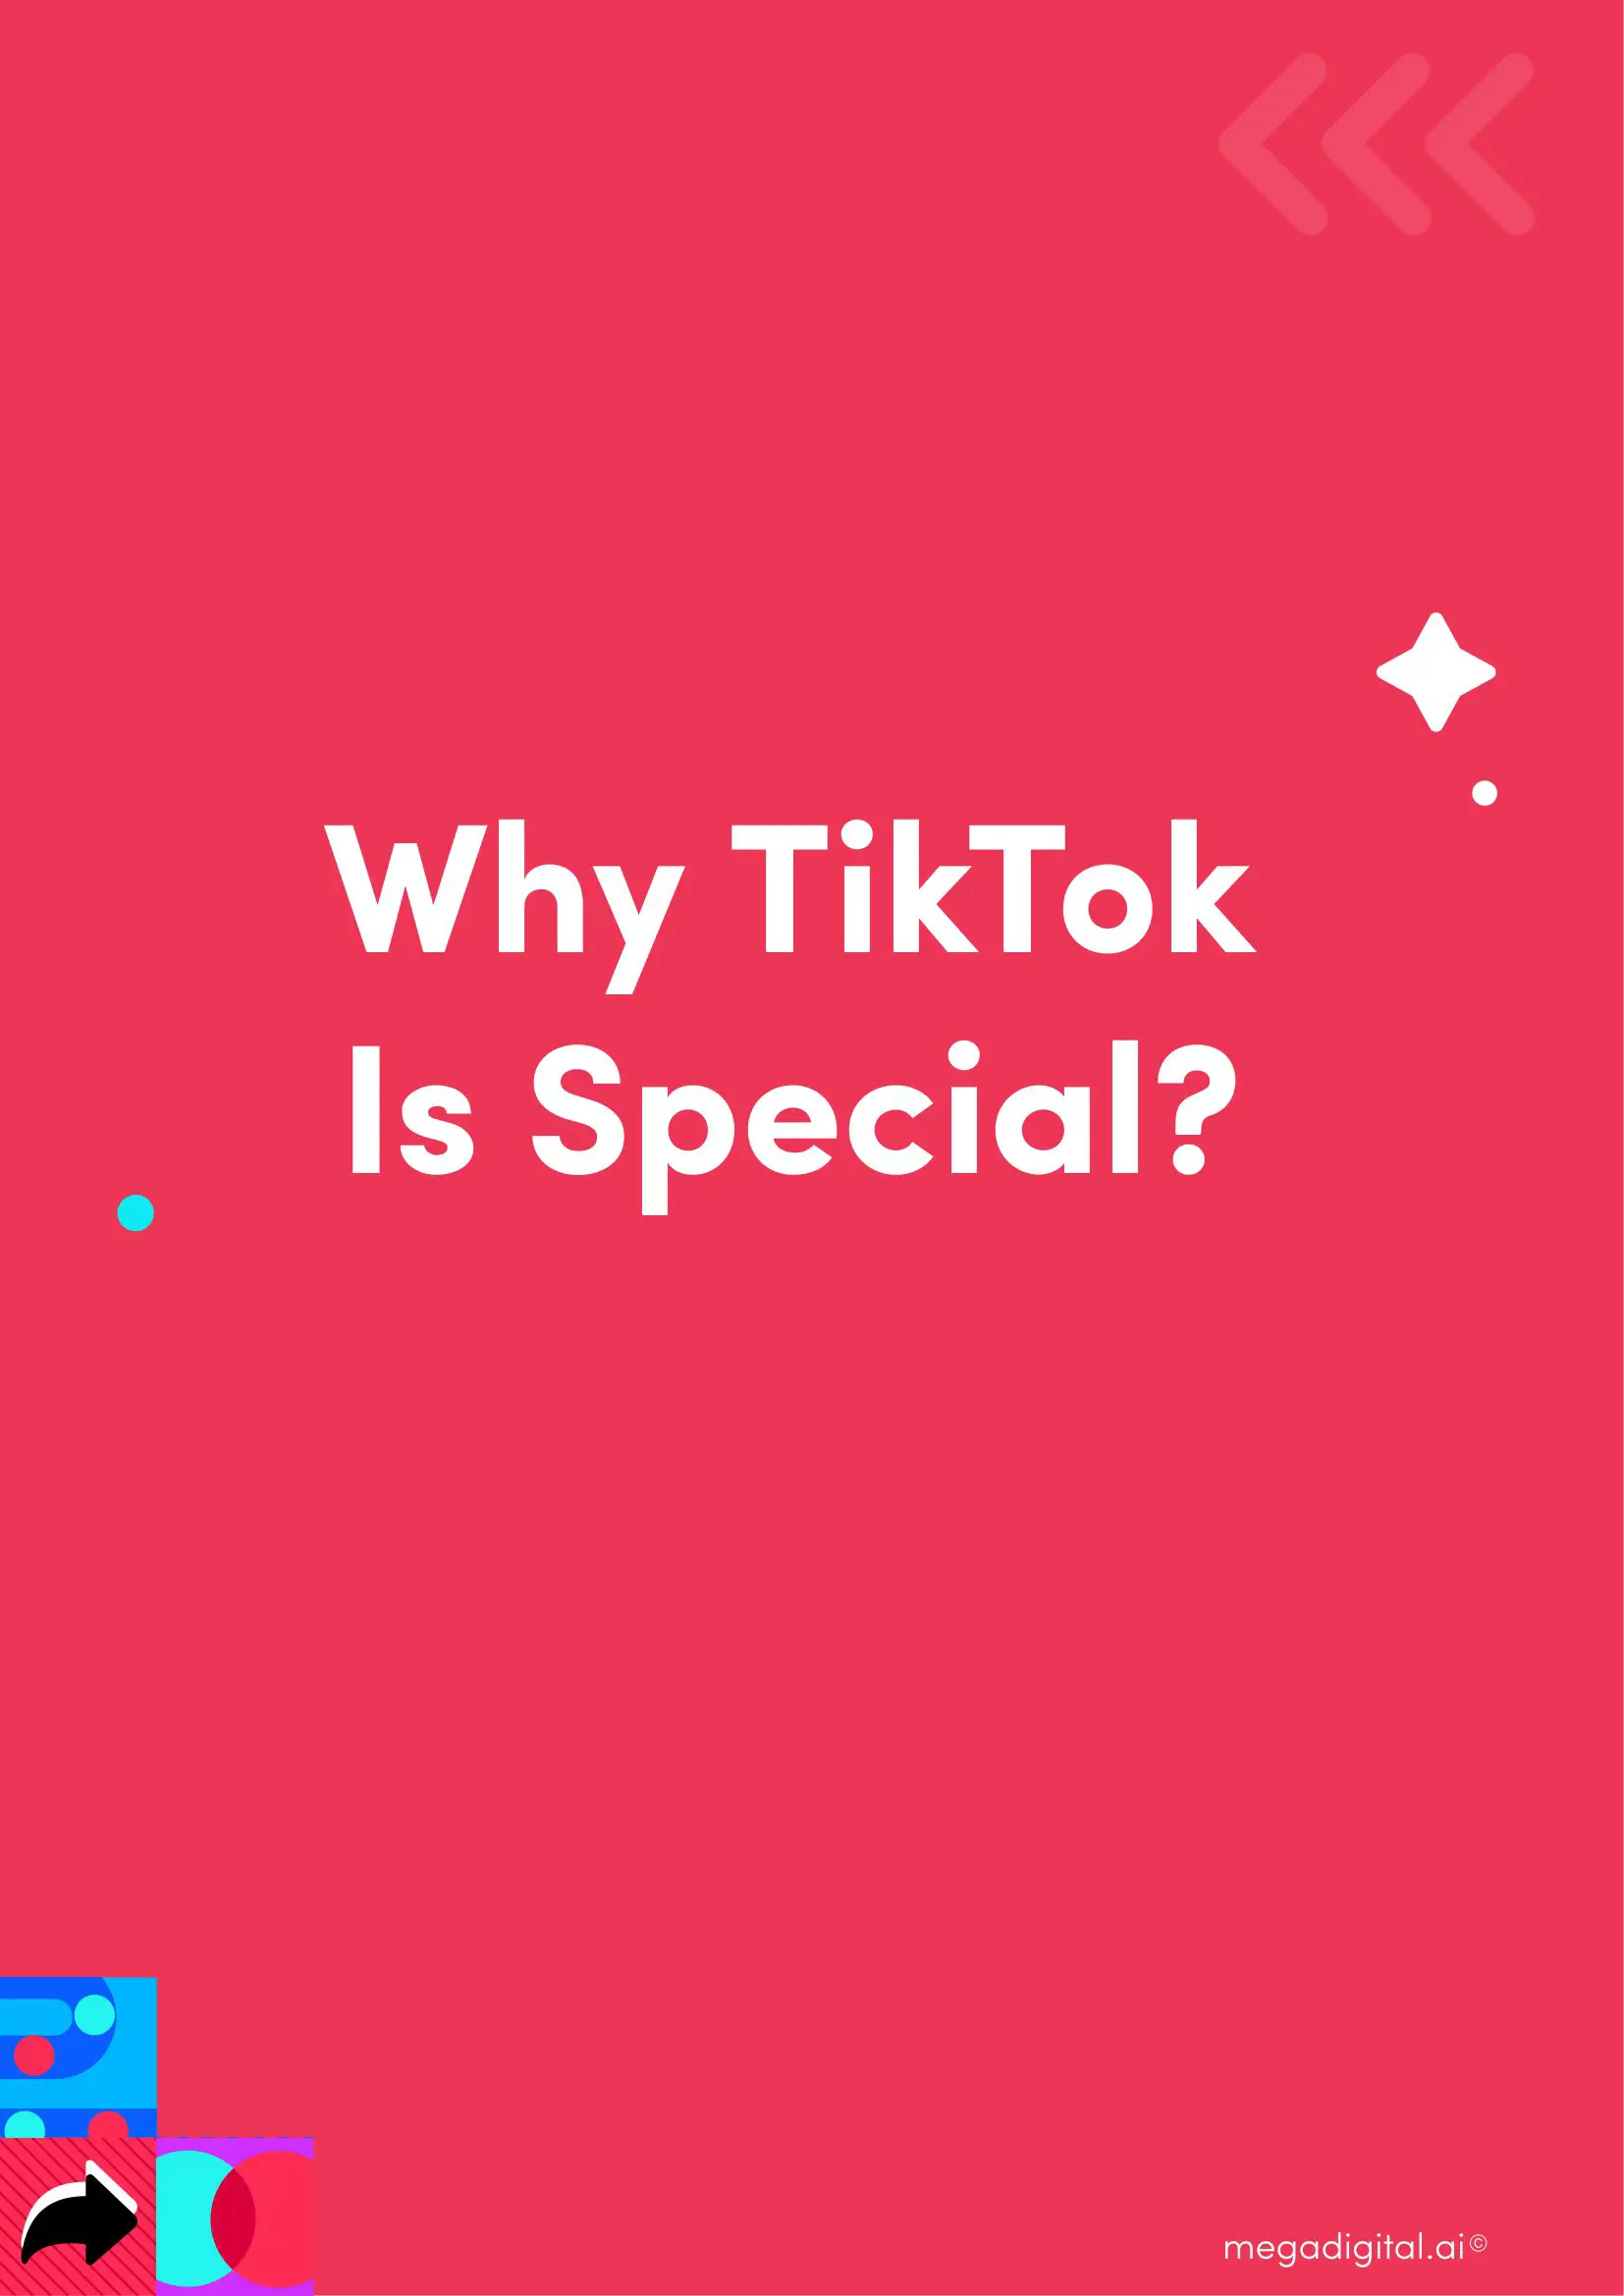 TikTok-Marketing-Playbook-03